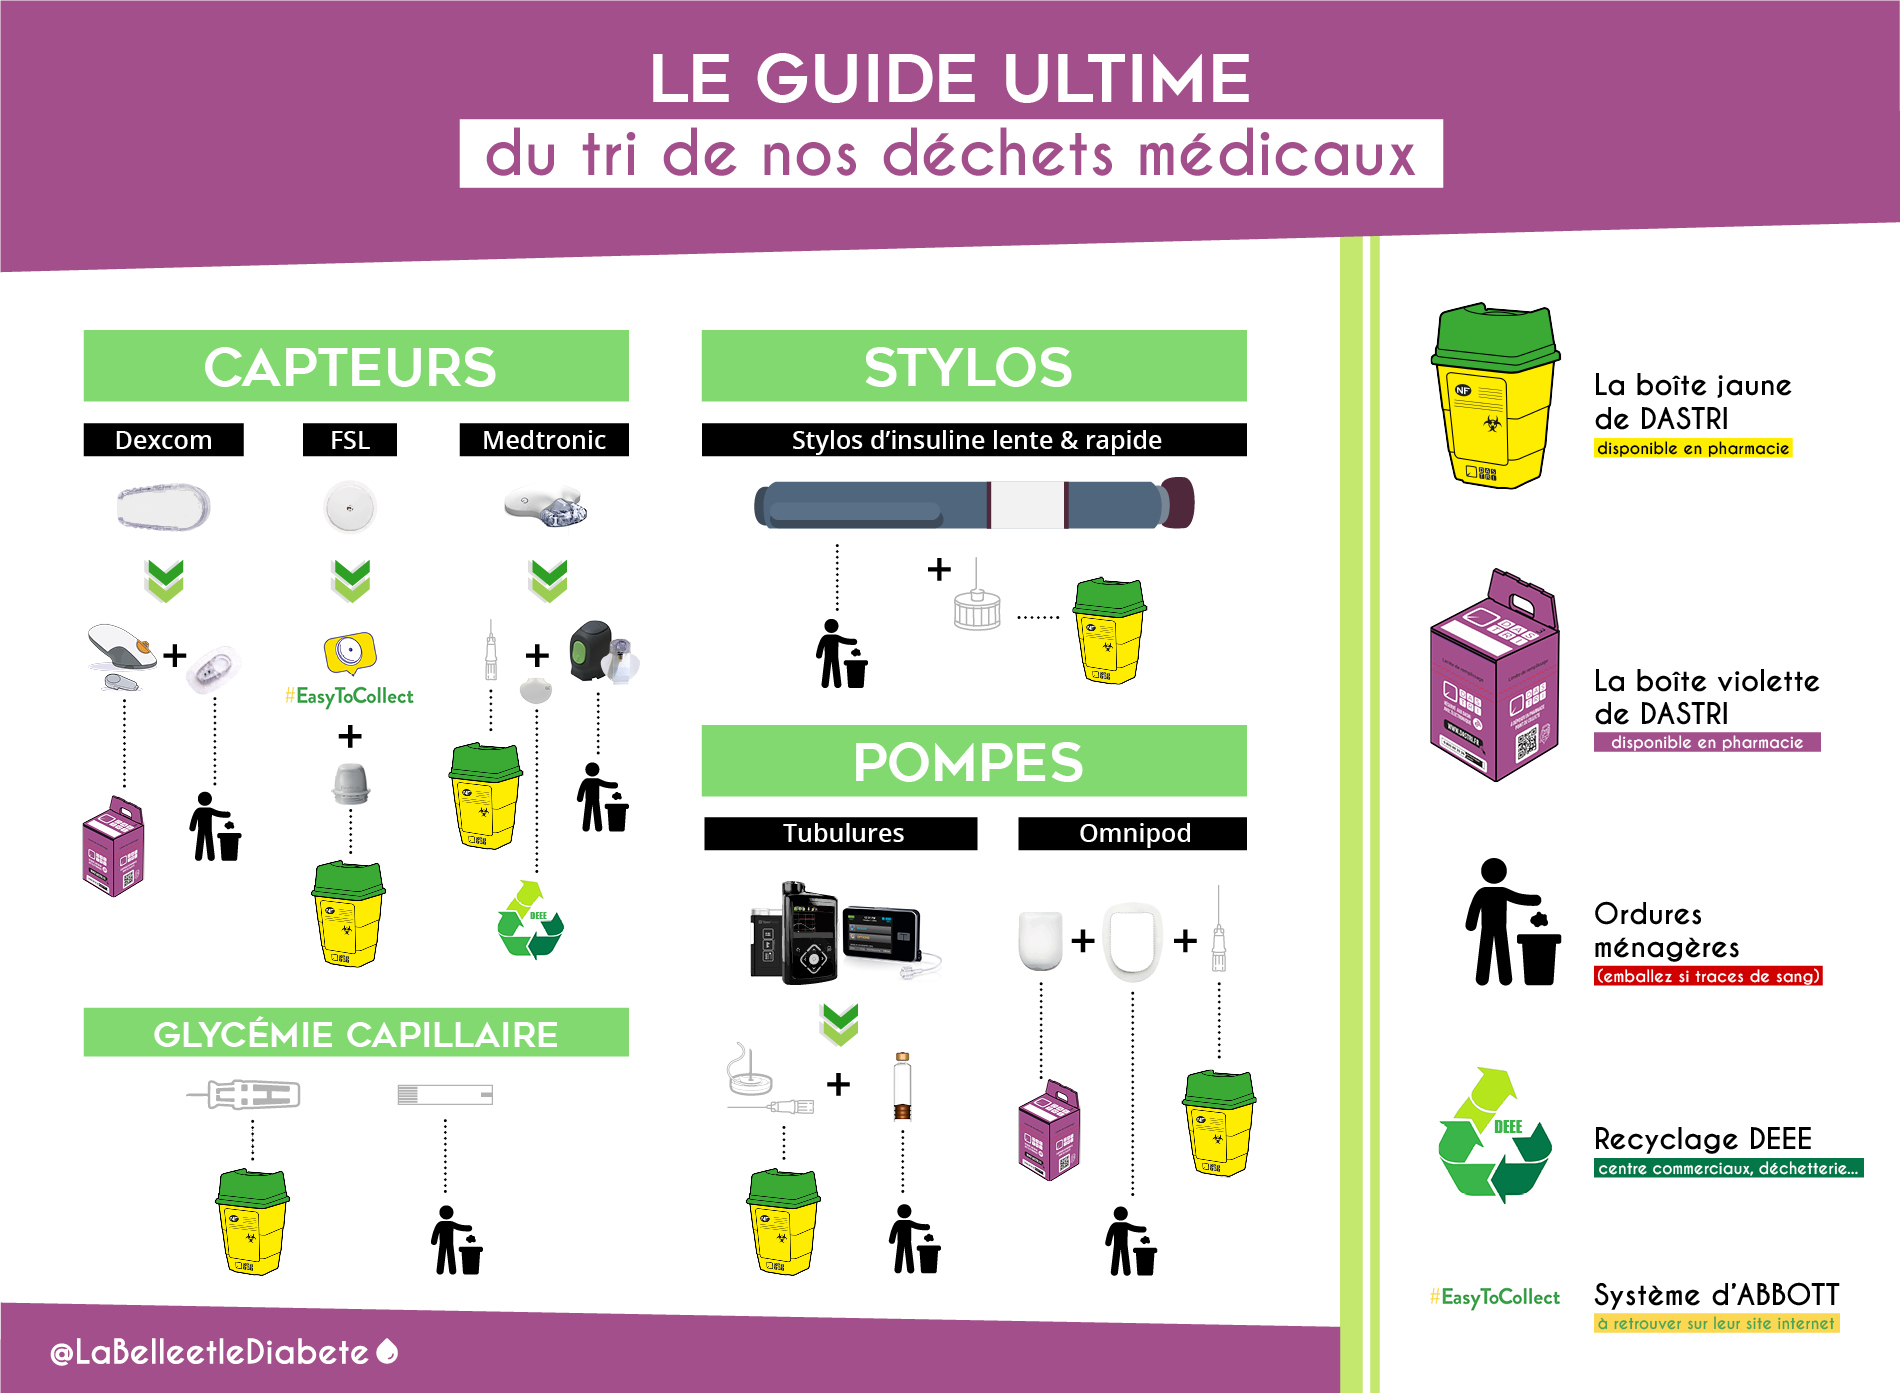 Le Guide Ultime du tri de nos déchets médicaux : Dastri et Diabète | La Belle & le Diabète